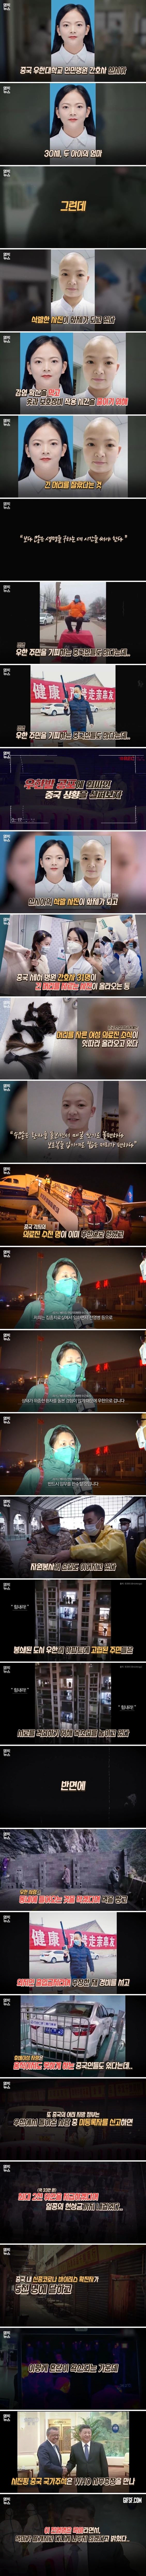 유령 도시 우한의 여성 의료진이 삭발을 하고 머리를 자르고 있다..공포에 빠진 중국의 상황.jpg